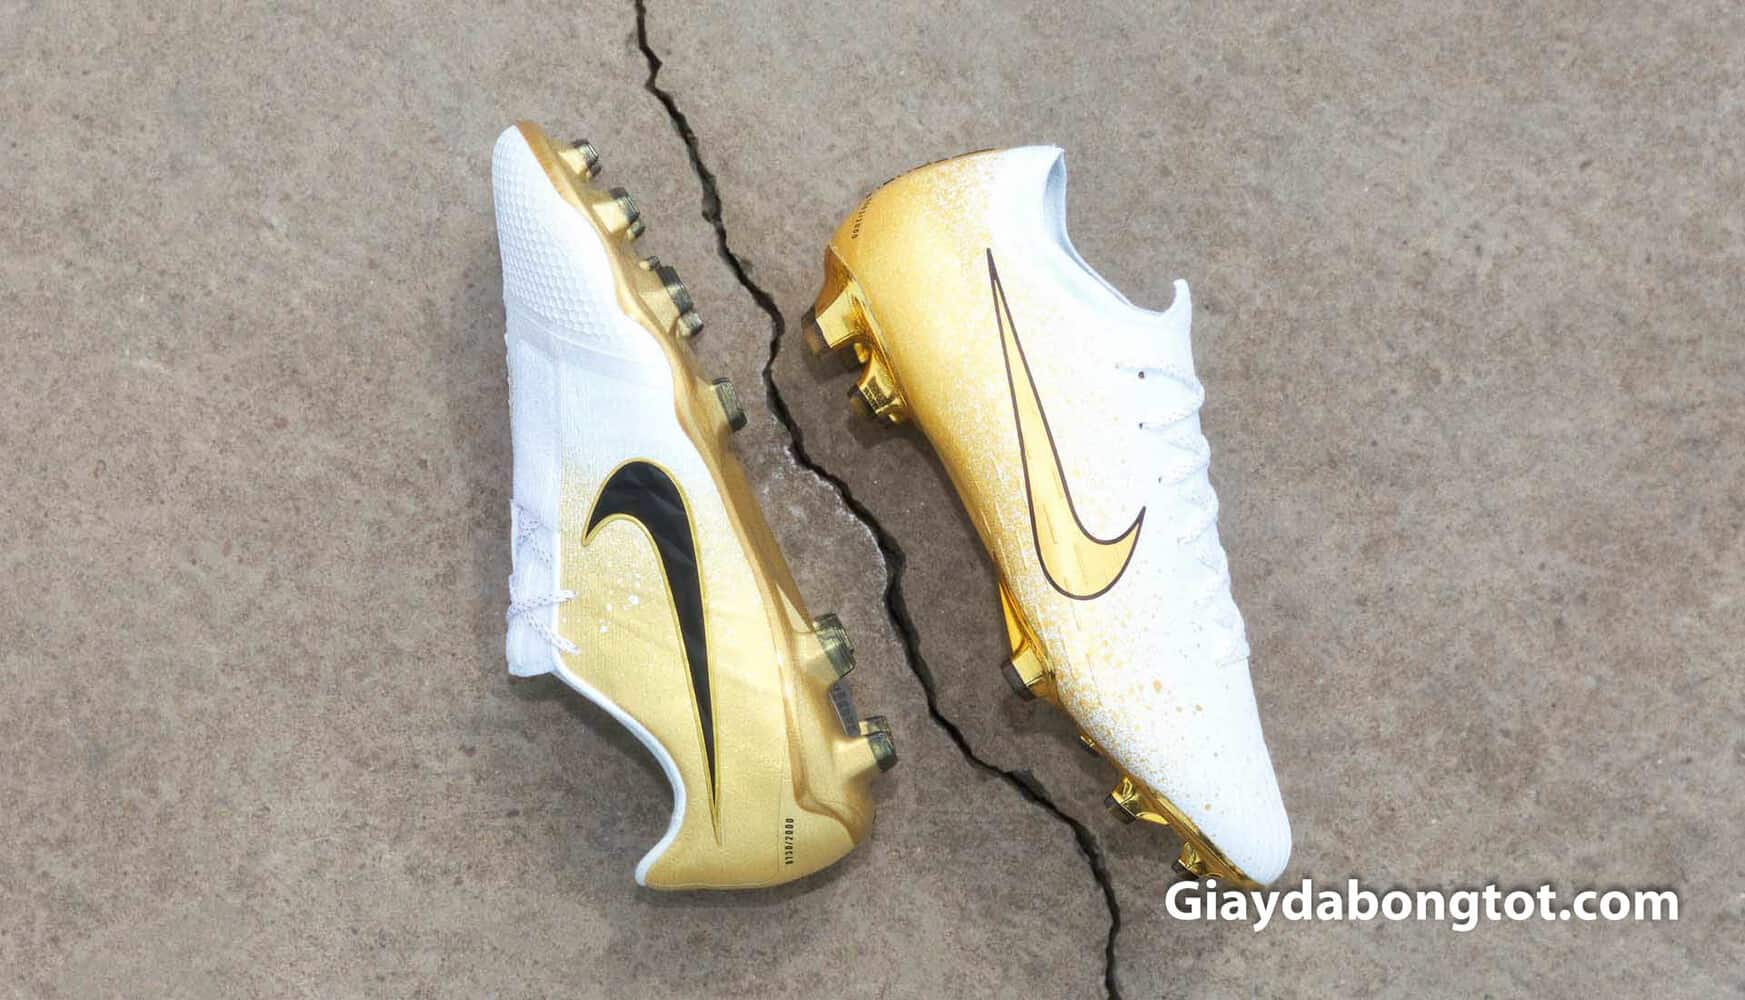 Phiên bản giới hạn giày đá bóng Nike Euphoria Gold sẽ được bán 2000 đôi mỗi mẫu trên toàn thế giới